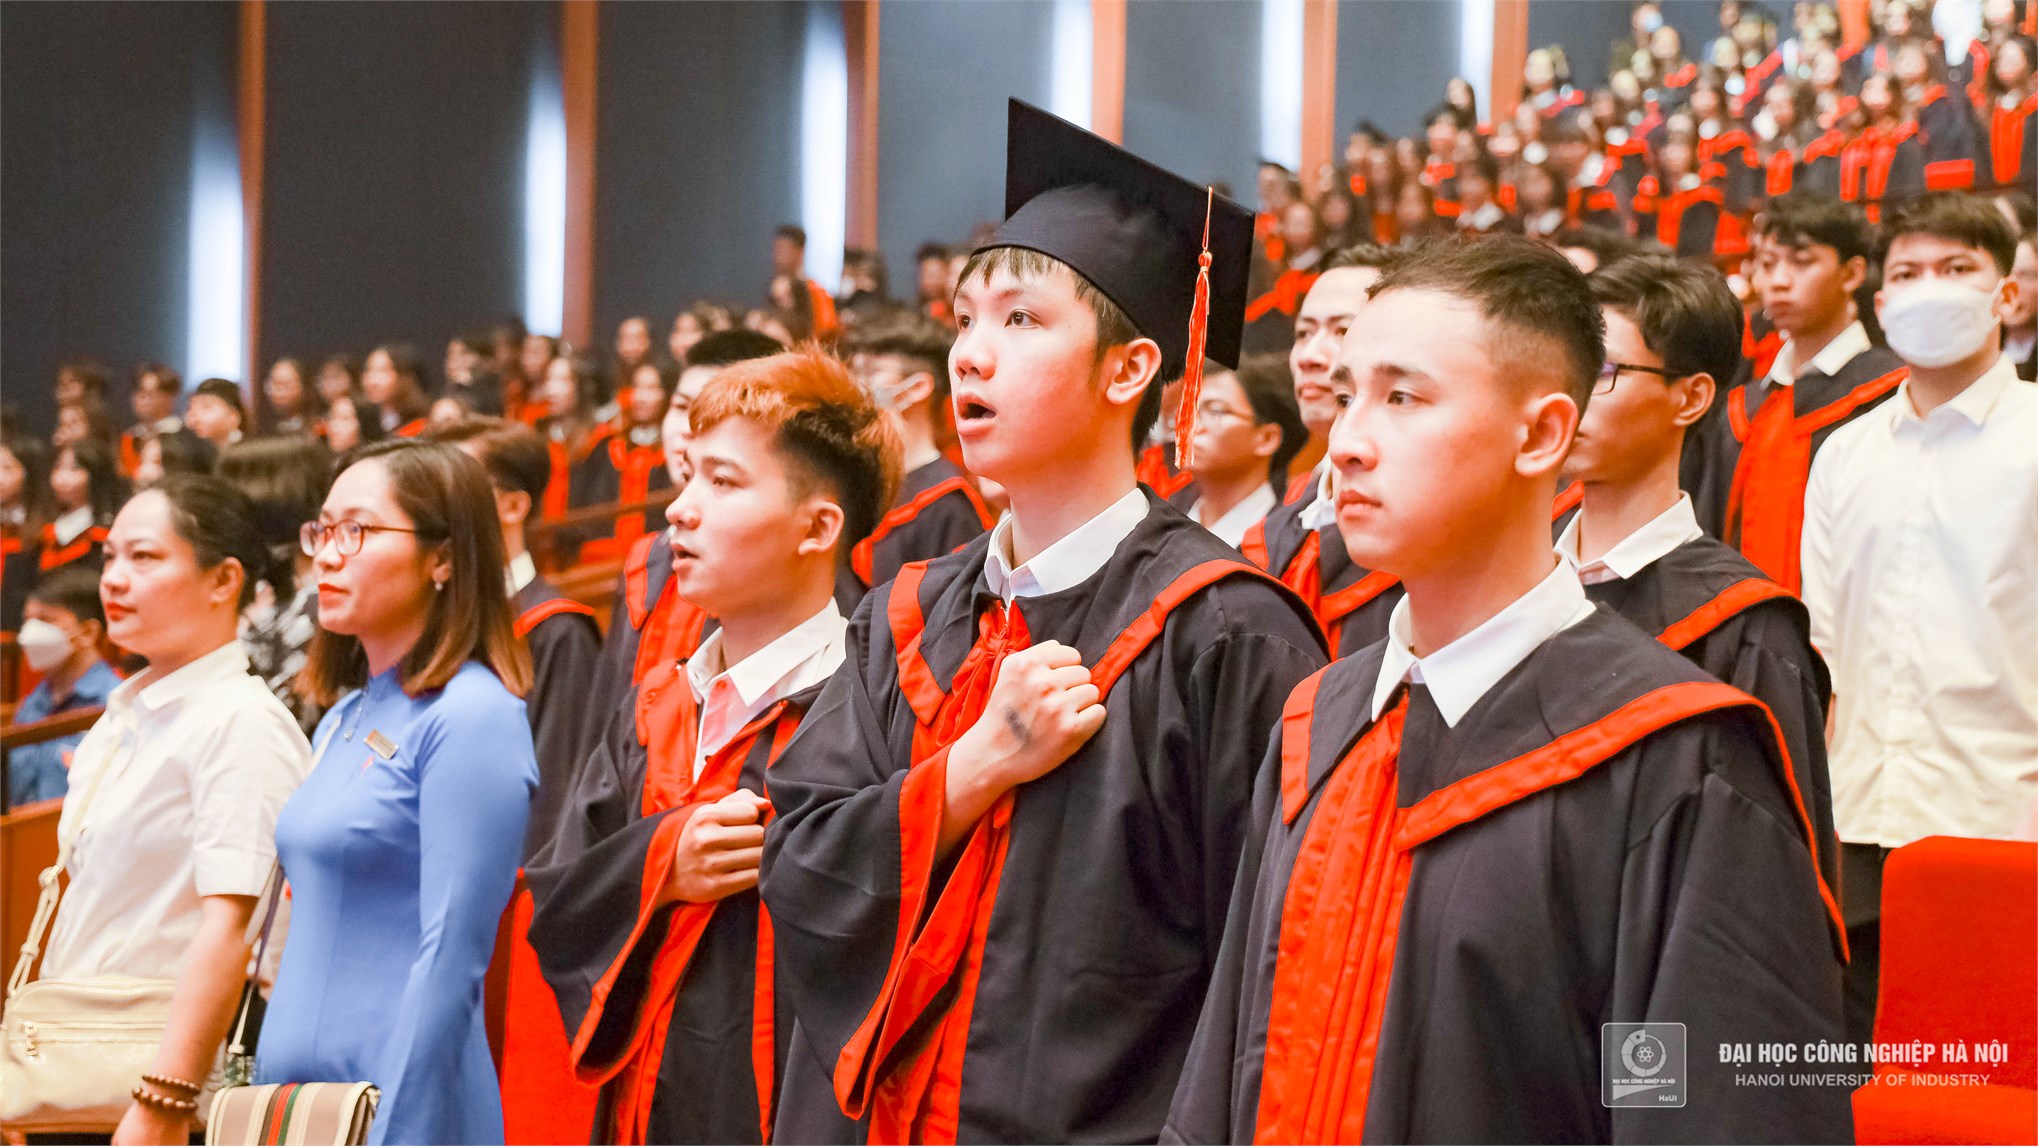 Những khoảnh khắc đáng nhớ của sinh viên Đại học Công nghiệp Hà Nội tại lễ tốt nghiệp